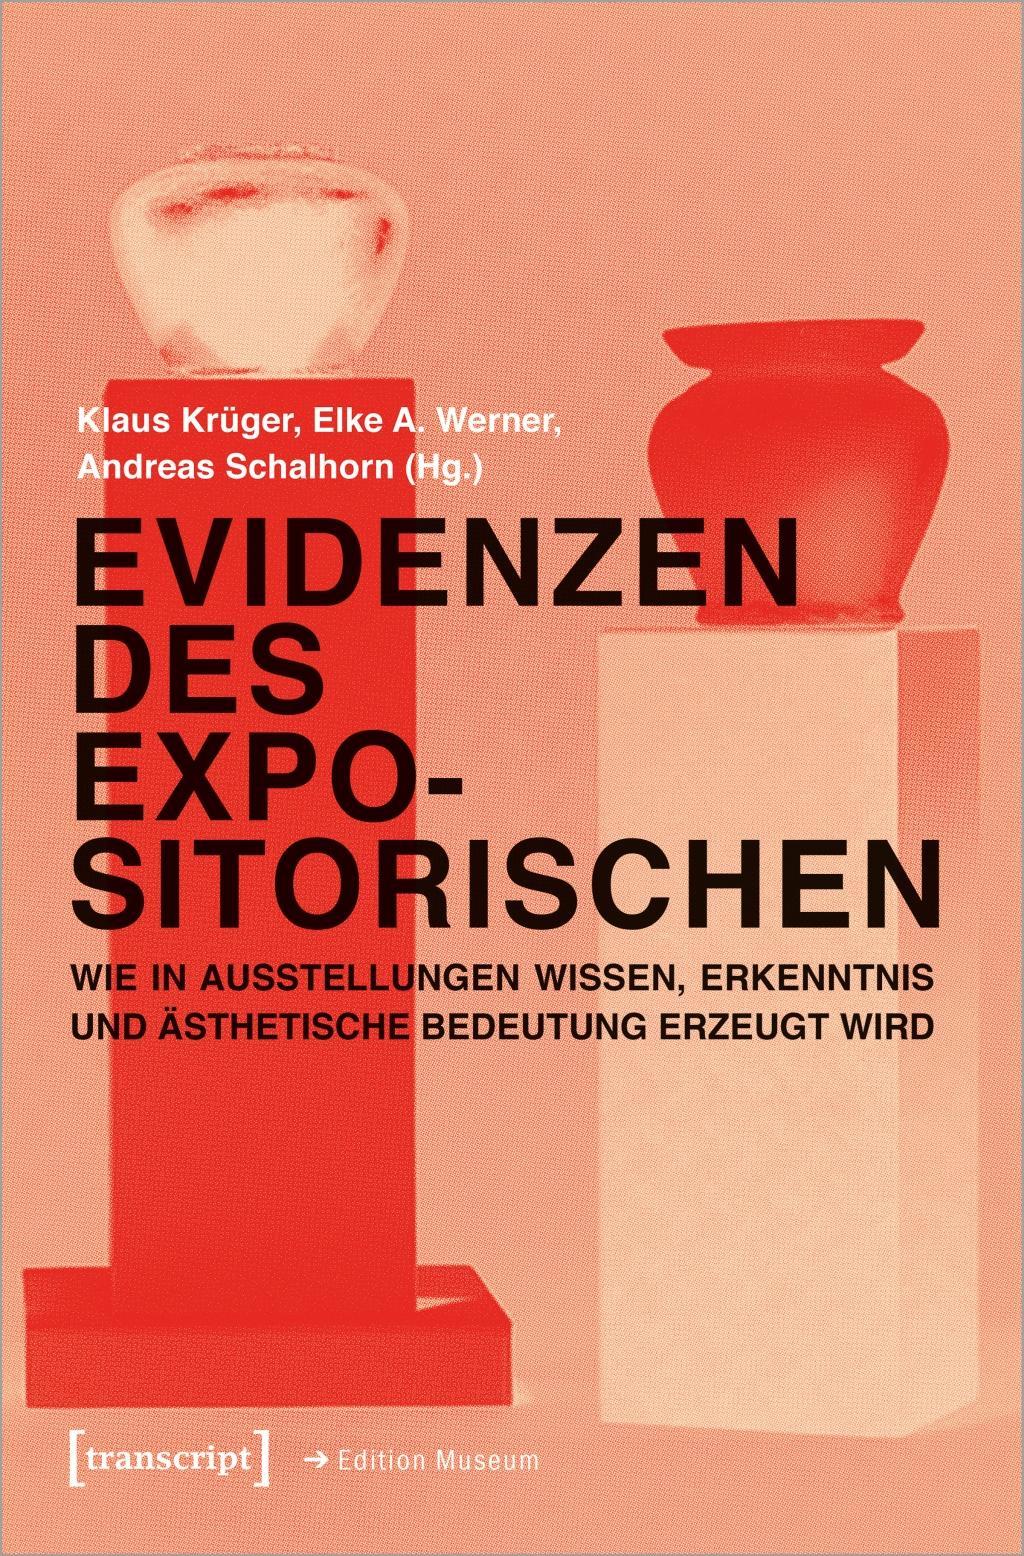 Evidenzen des Expositorischen - Krüger, Klaus|Werner, Elke A.|Schalhorn, Andreas|Metzel, Tabea